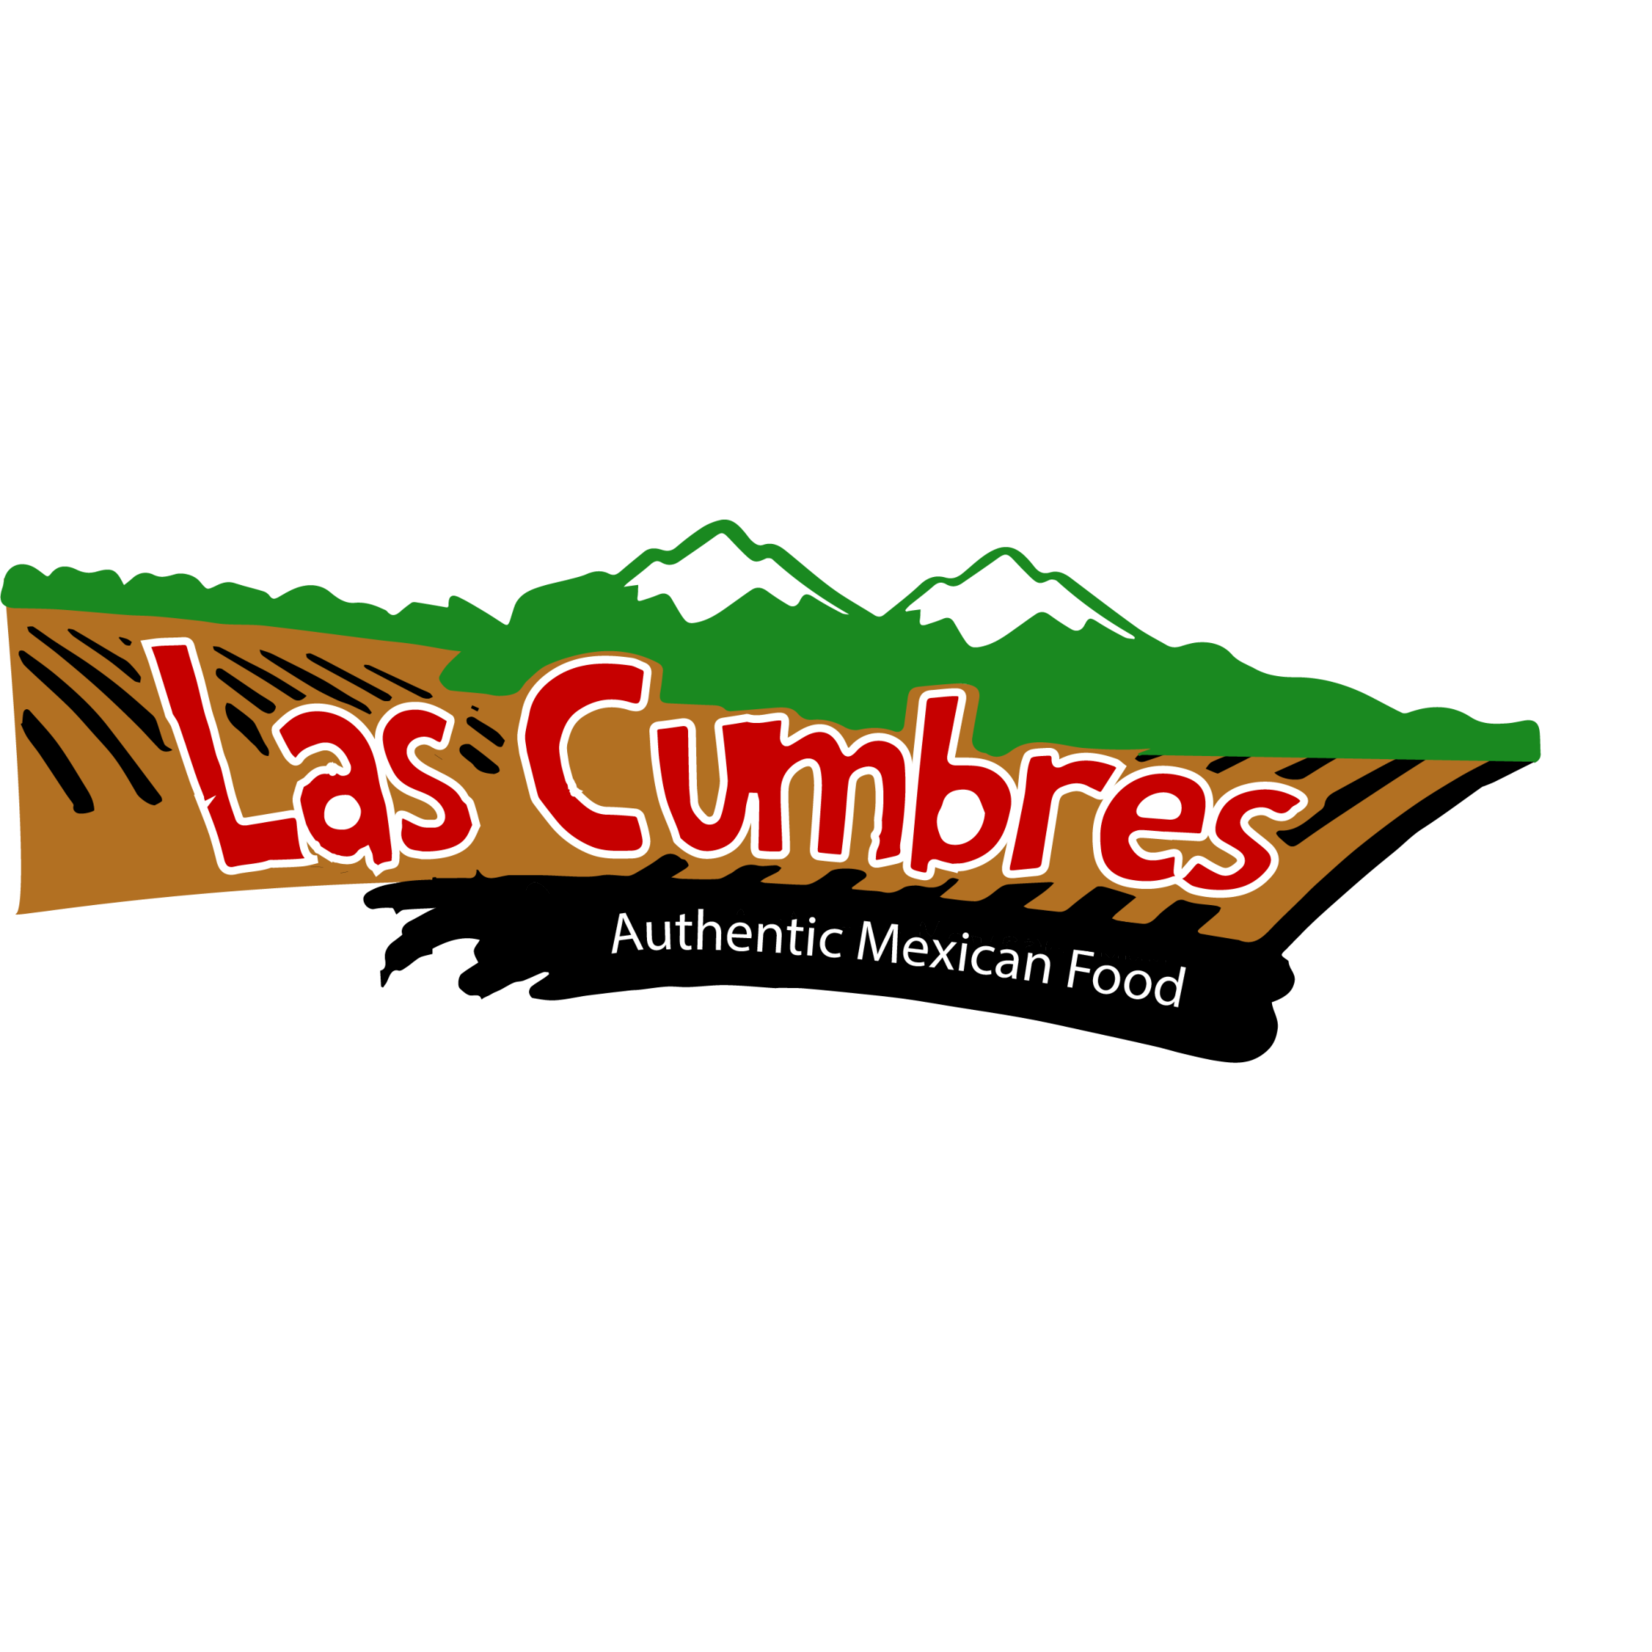 Taqueria Las Cumbres-Crystal Lake Taqueria Las Cumbres-Crystal Lake $5.00 Dining certificate